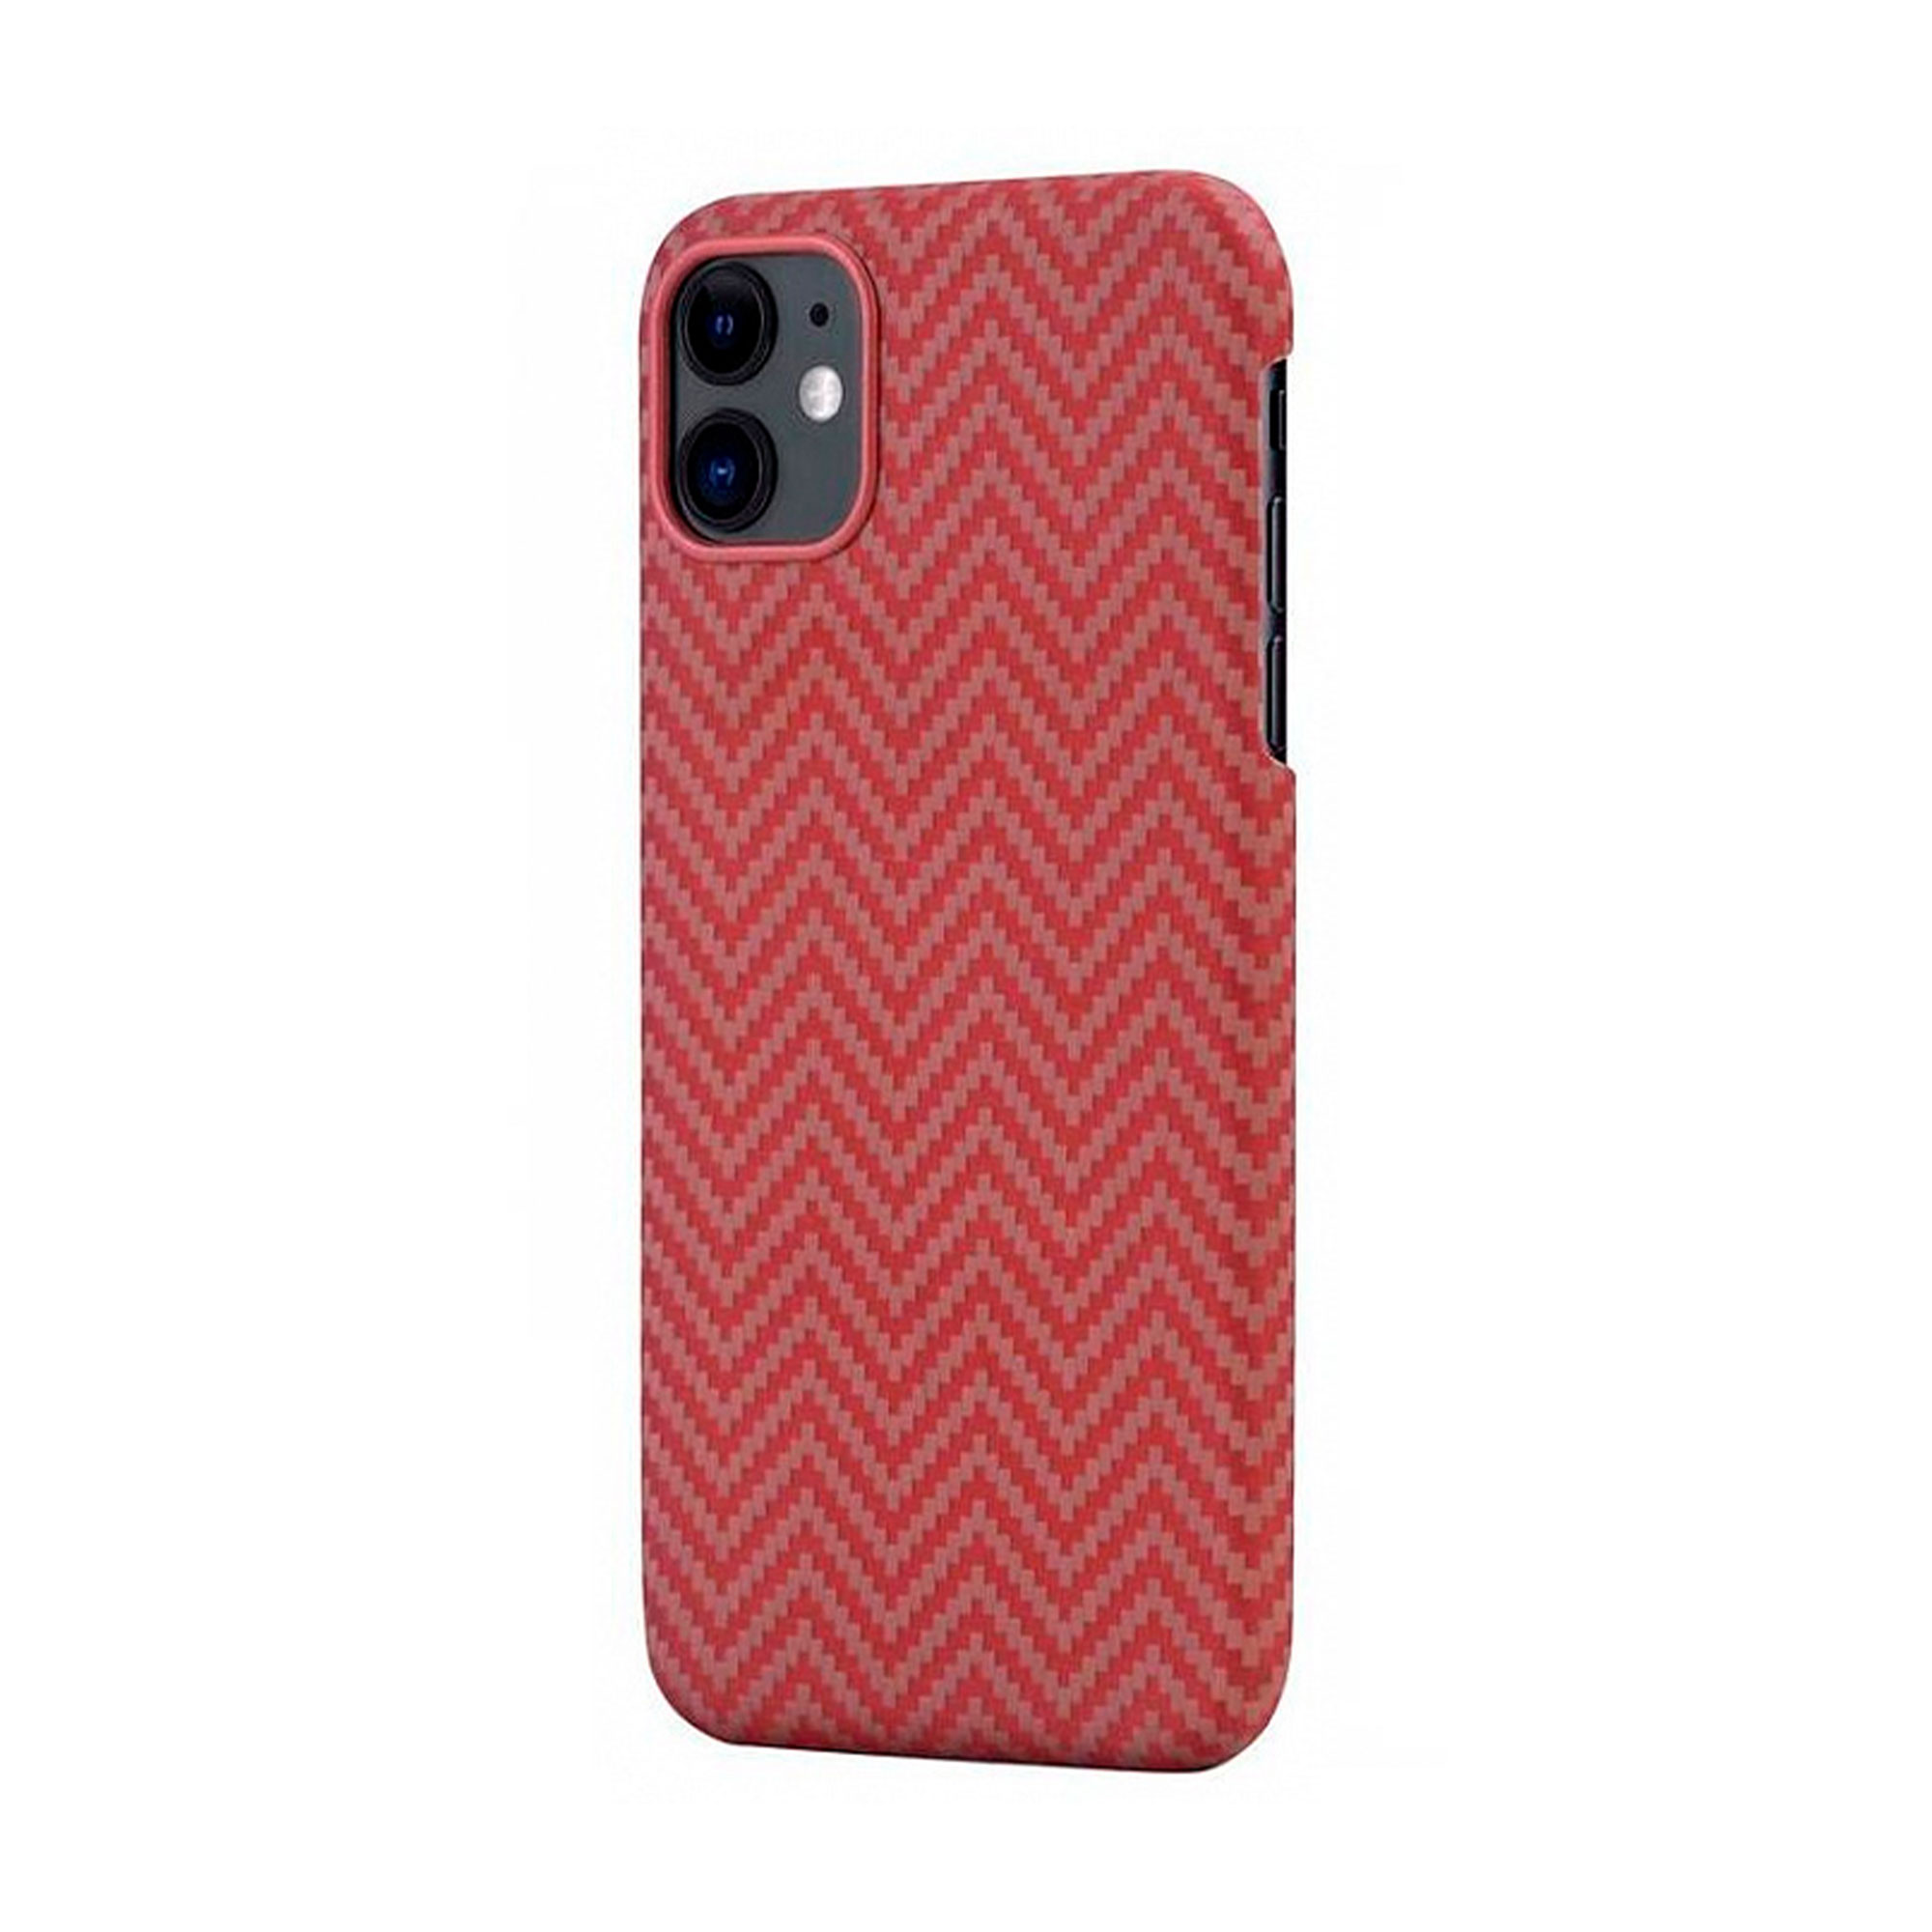 Фото — Чехол для смартфона Pitaka для iPhone 11, красно-оранжевый (мелкое плетение)